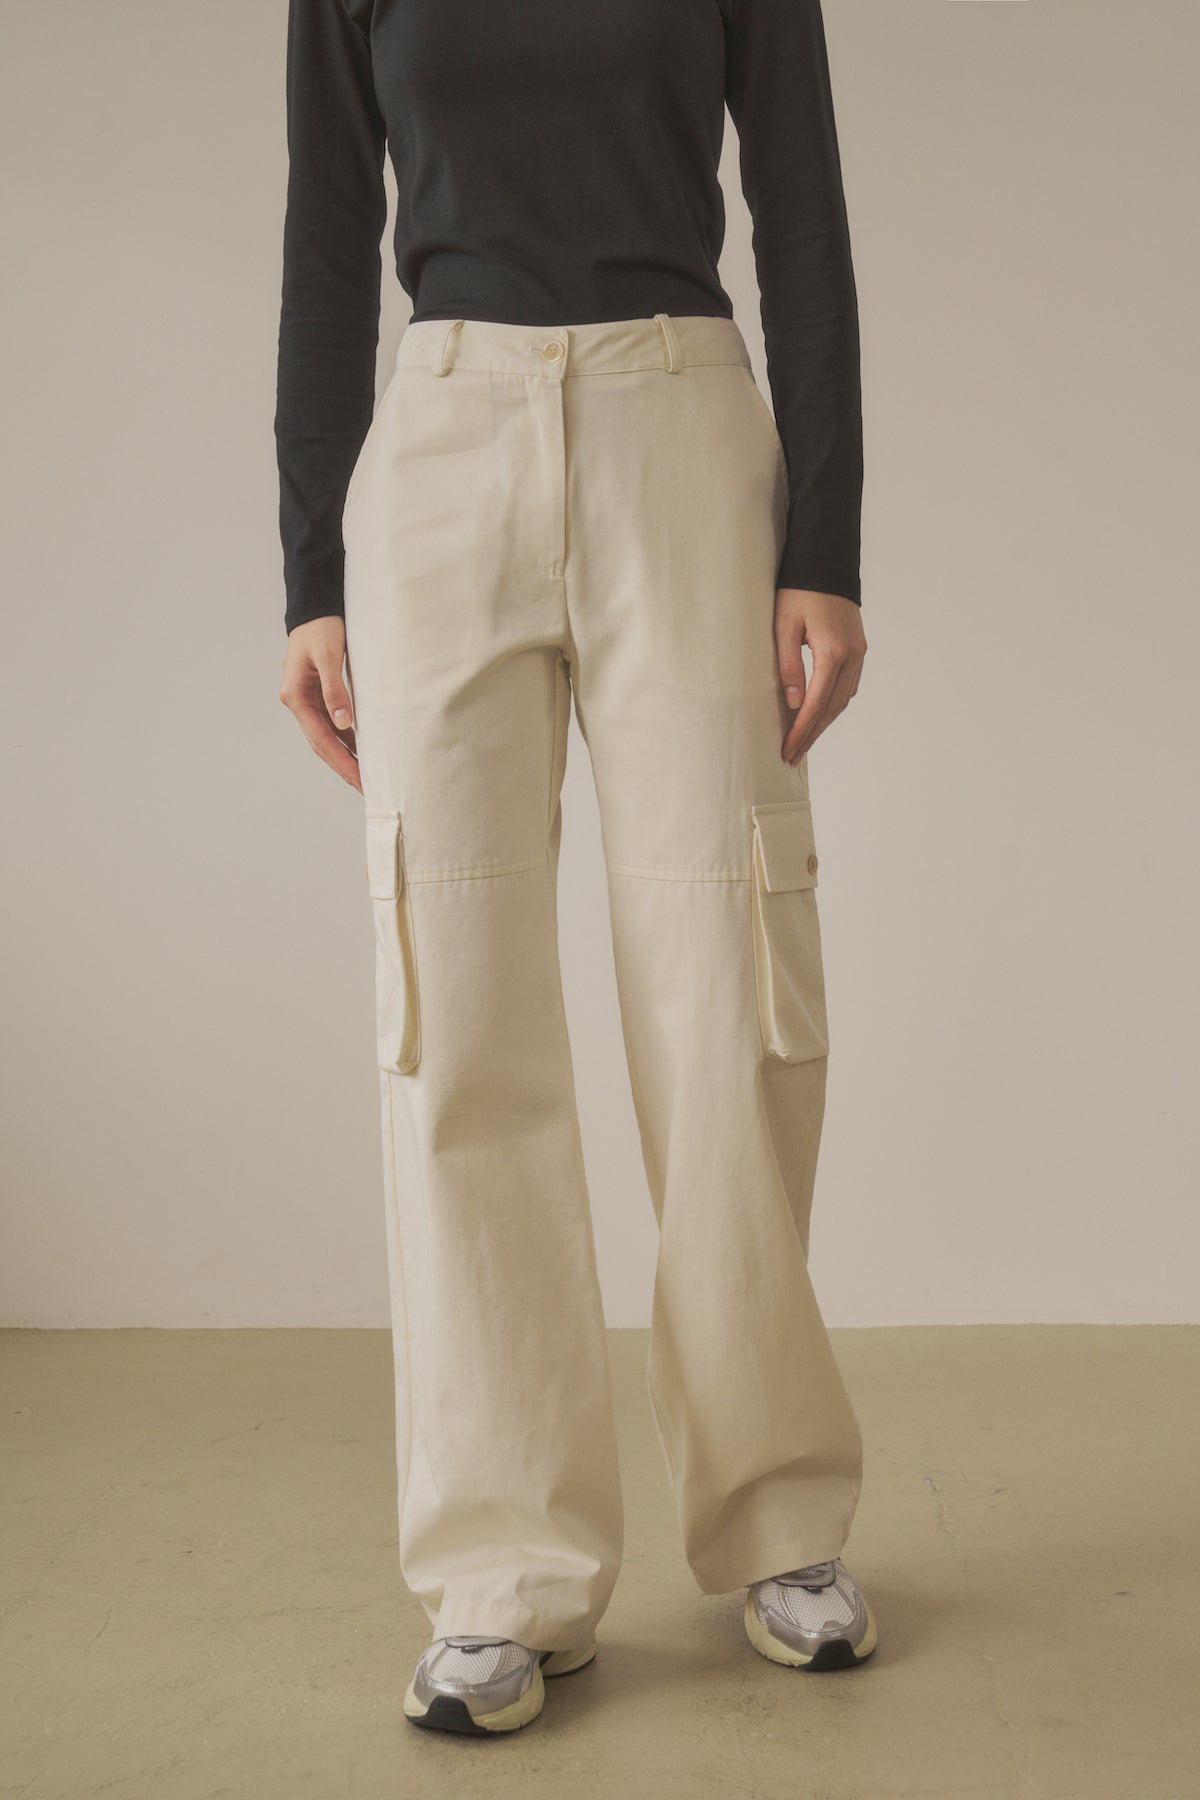 Feminine Bootcut Cargo Pants In Cream